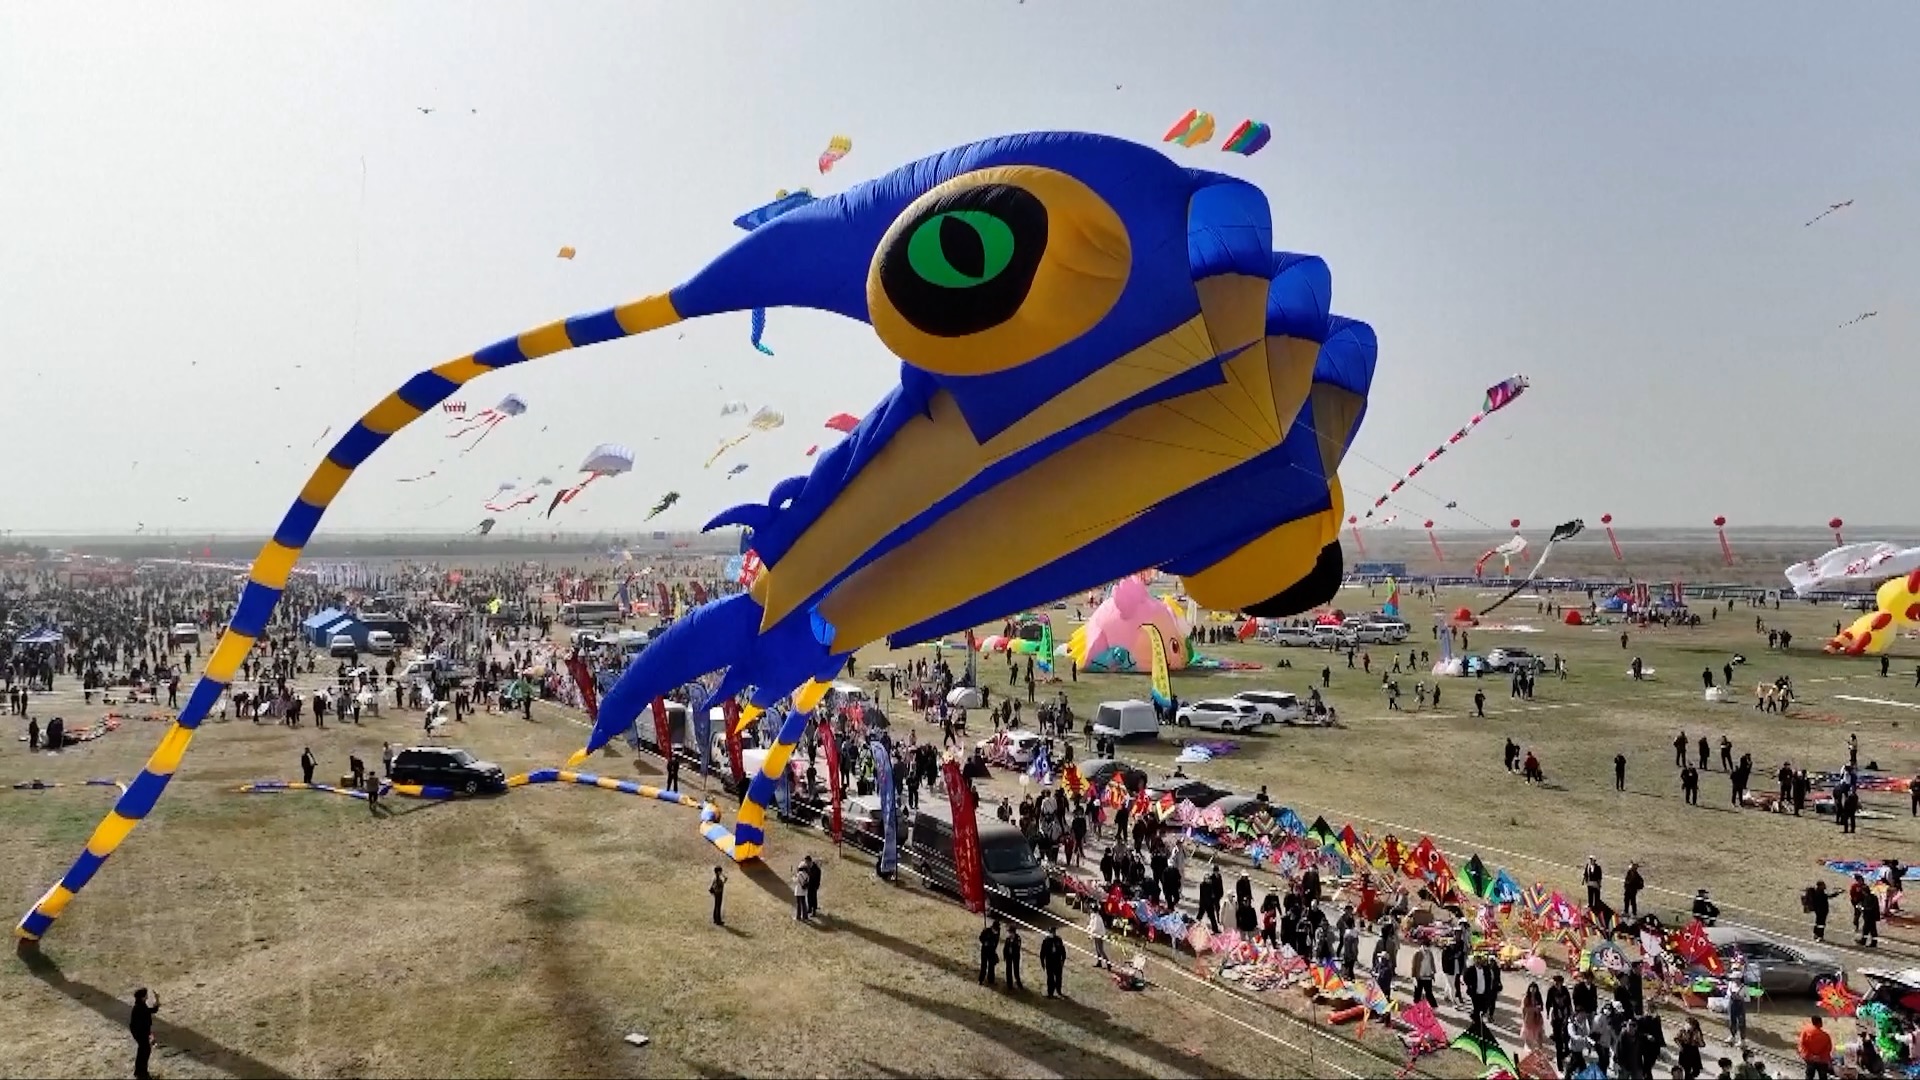 Фестиваль воздушных змеев в Китае: Как празднуется